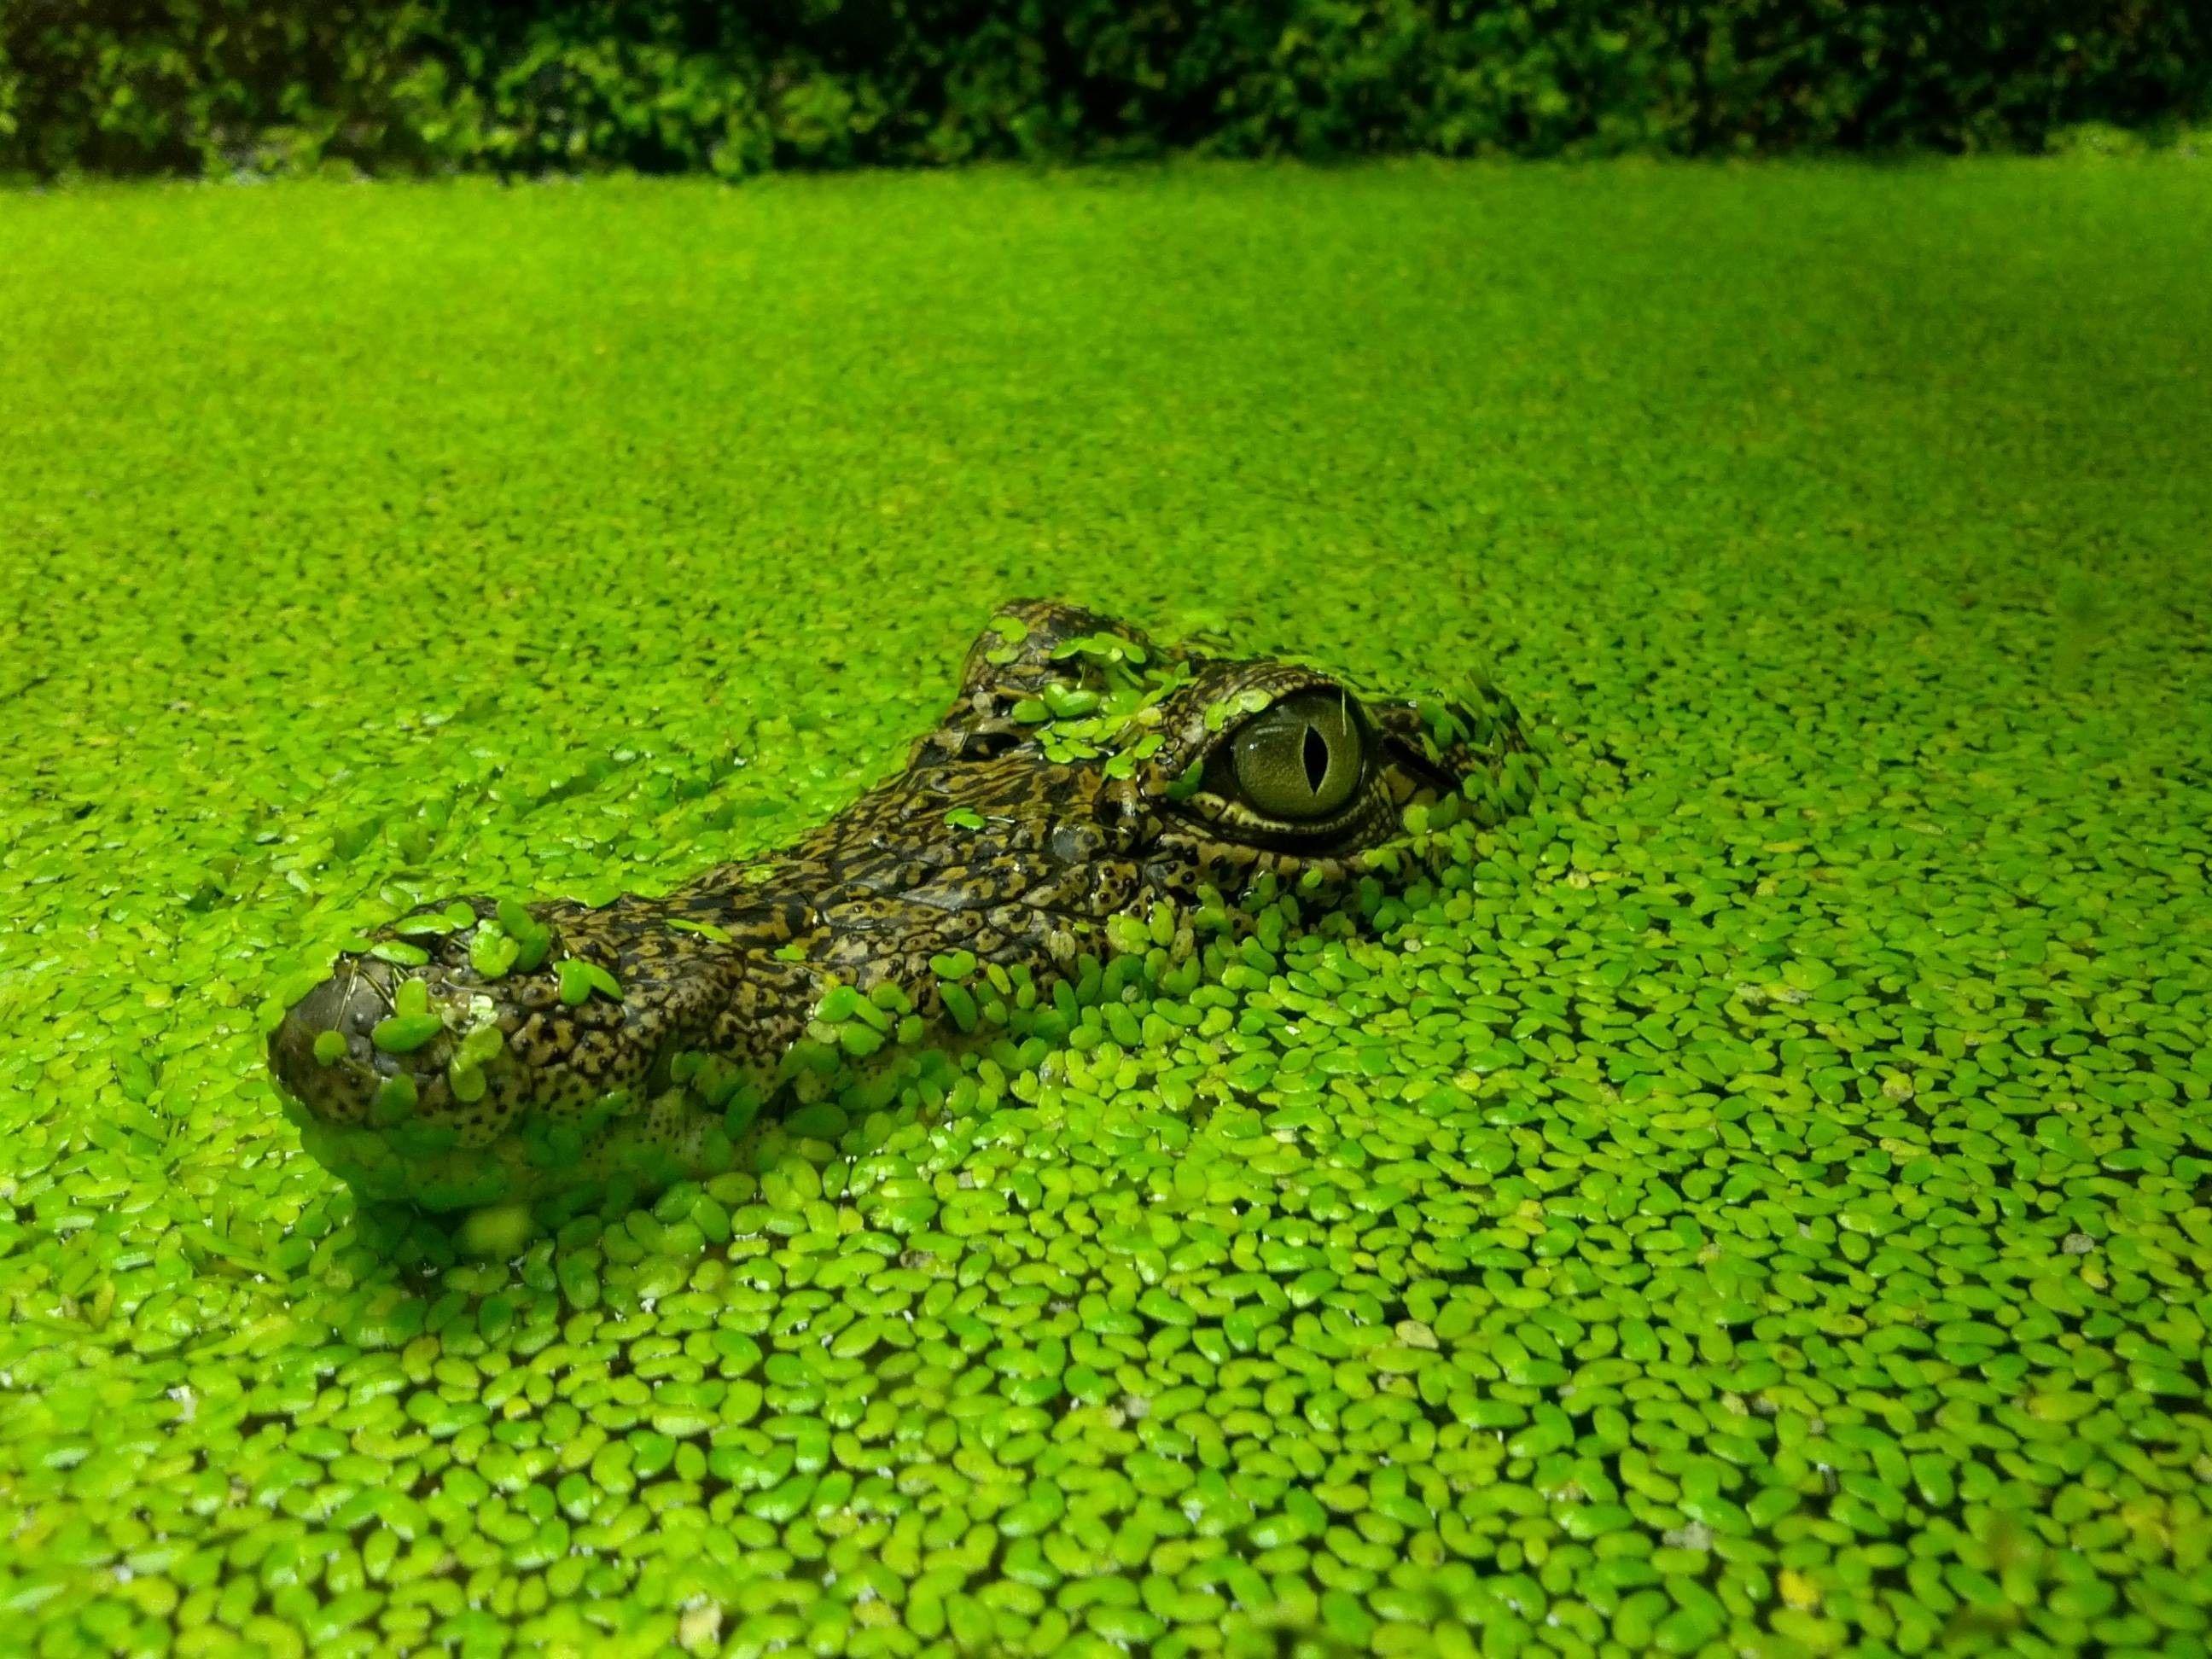 Water nature crocodiles reptiles wallpaper